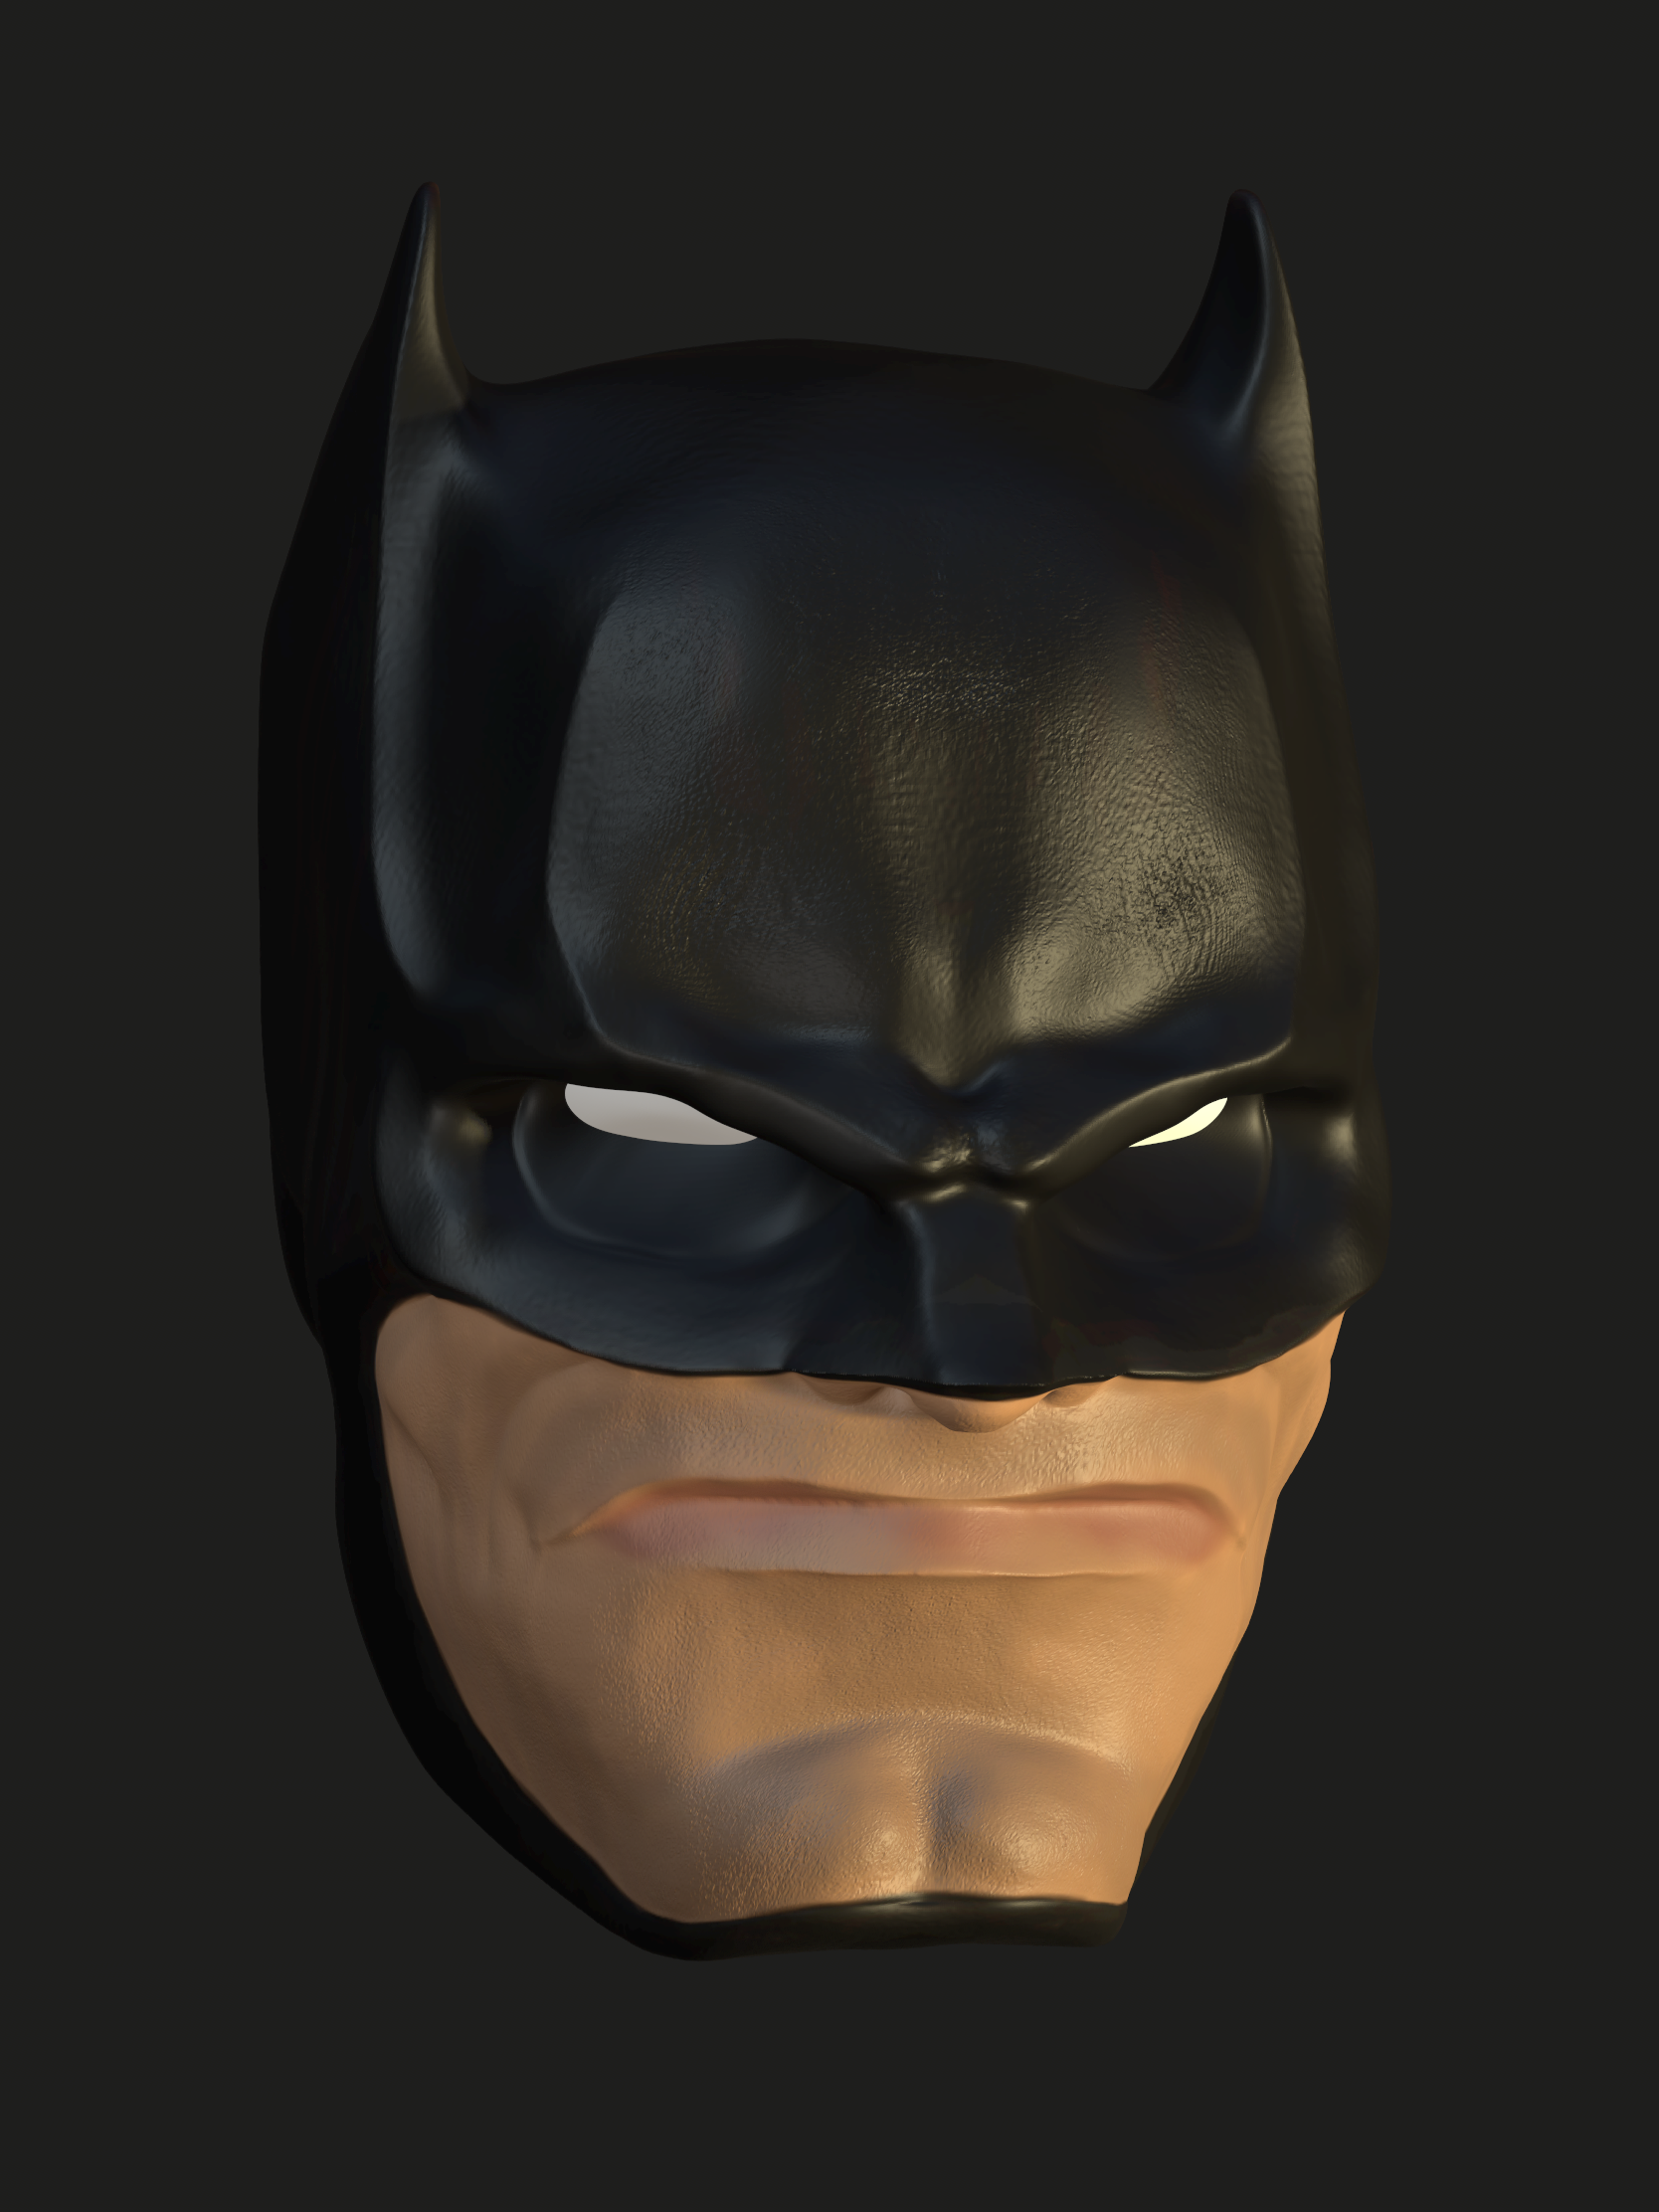 Batman-4.png Download STL file Batman headsculpt figure • 3D printable object, ComboKino